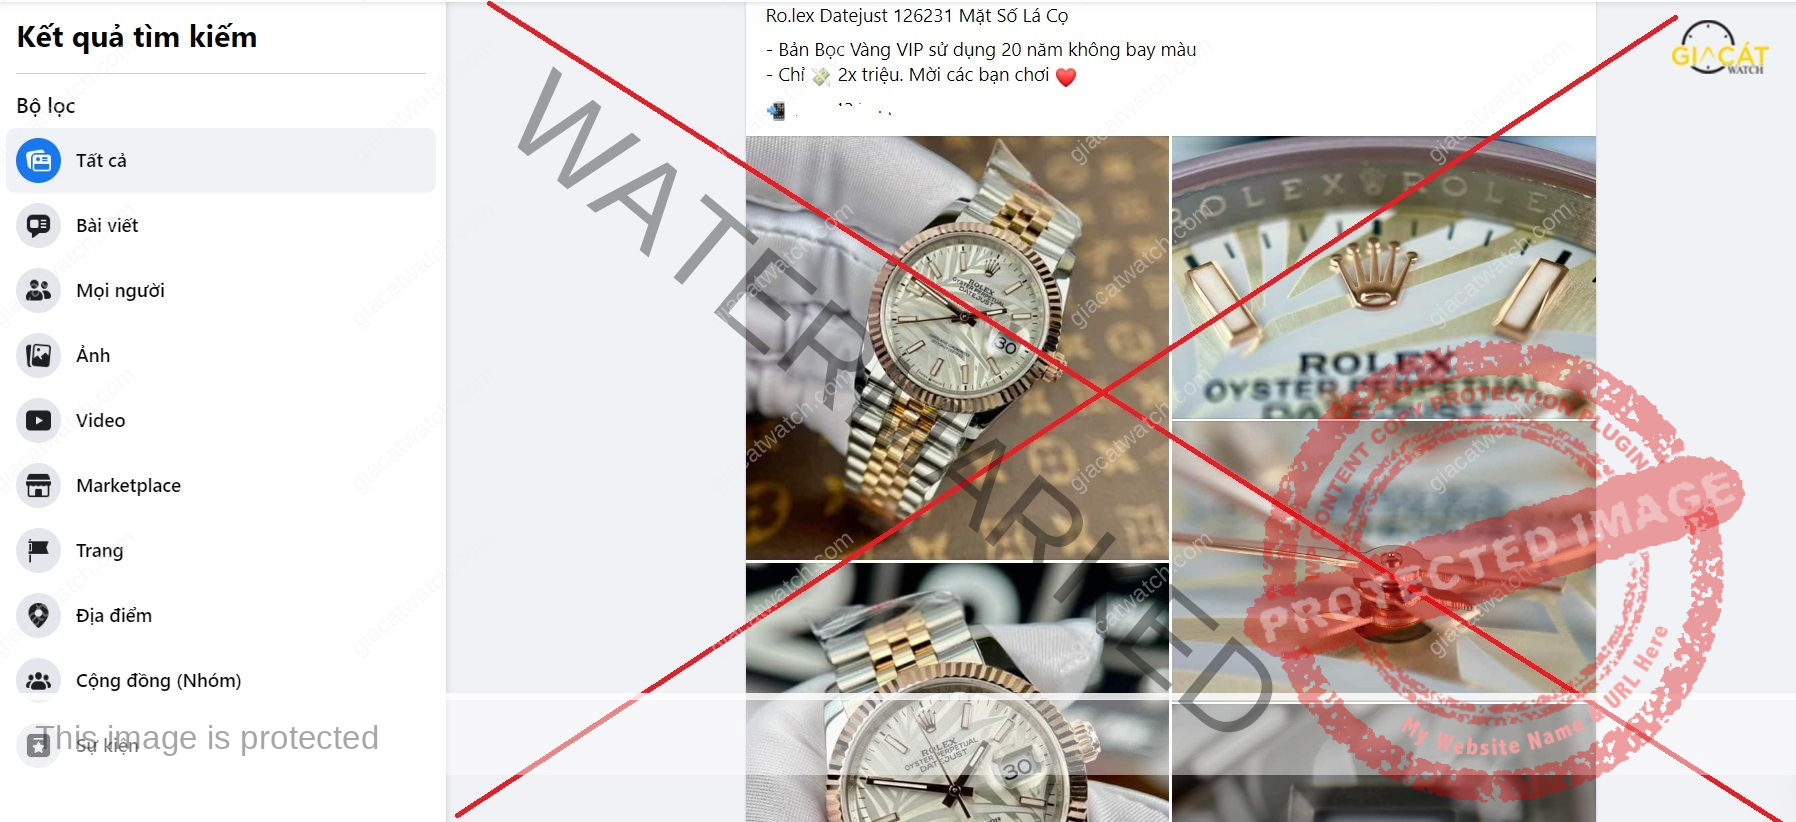 Đồng hồ Replica được quảng cáo sai sự thật đánh lừa người mua hàng